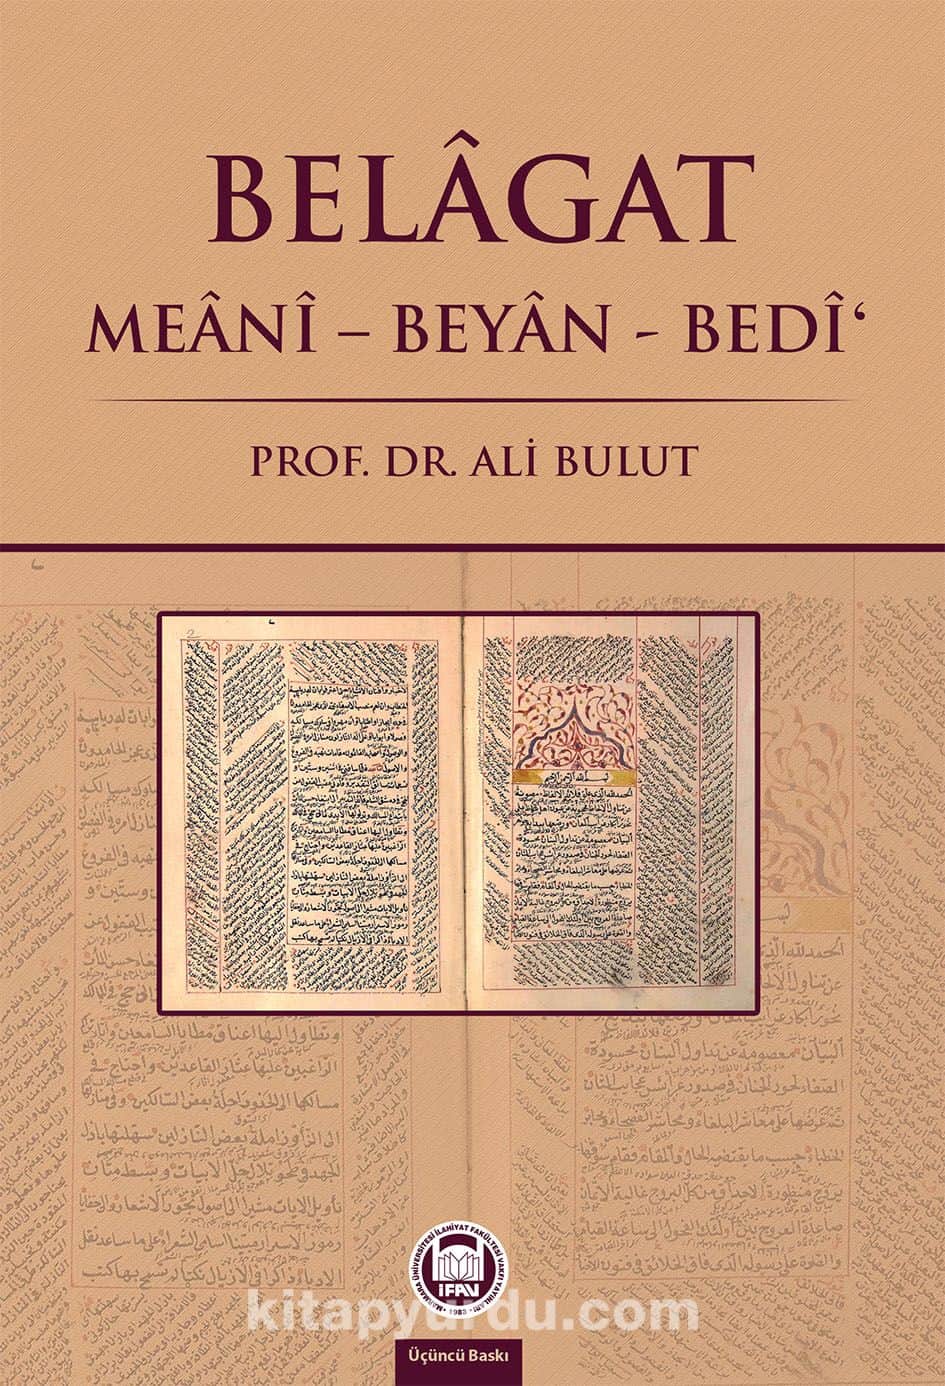 Belagat & Meani-Beyan-Bedi